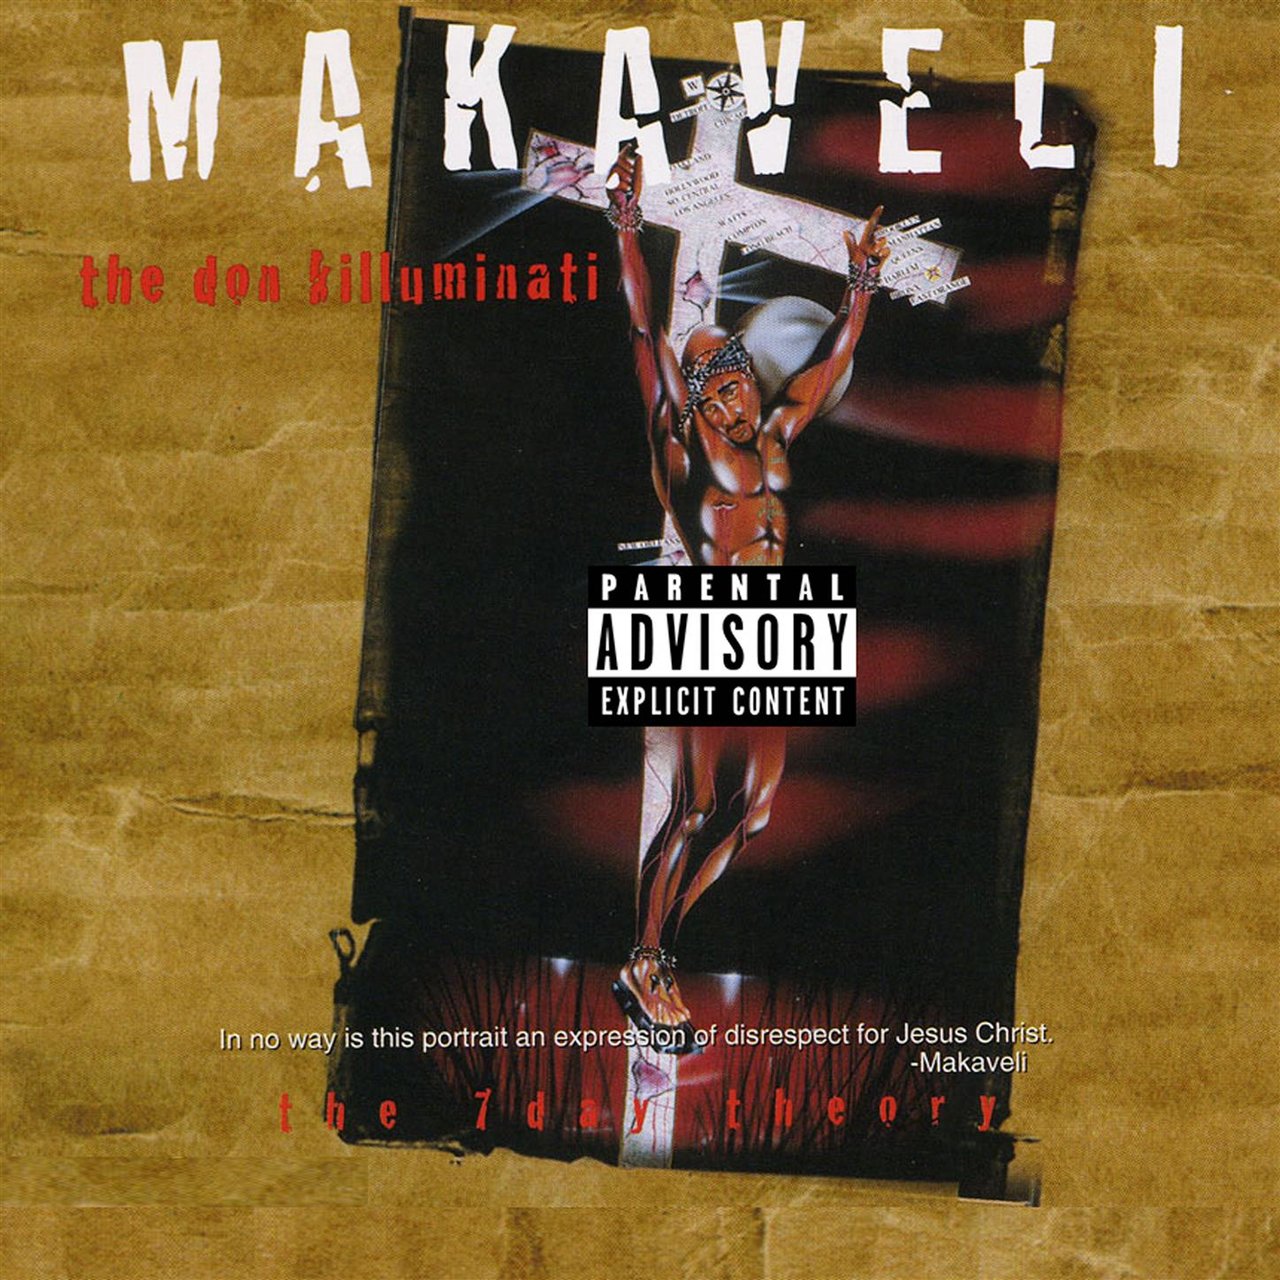 Makaveli - The Don Killuminati: The 7 Day Theory (Cover)